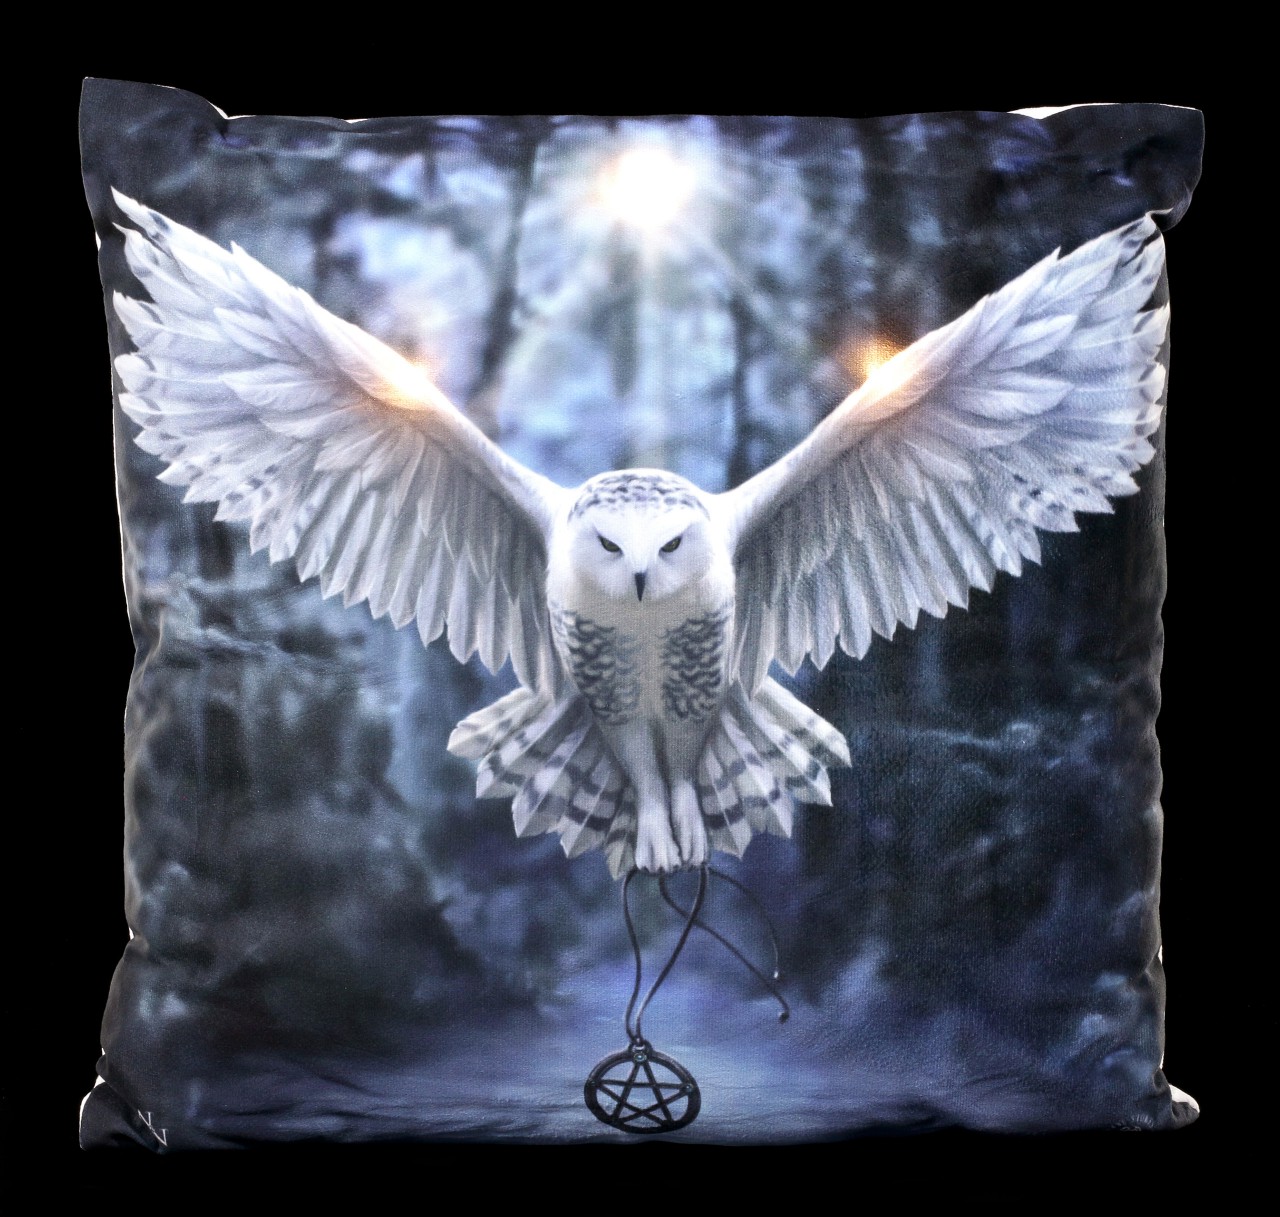 LED Cushion with Owl - Awaken your Magic